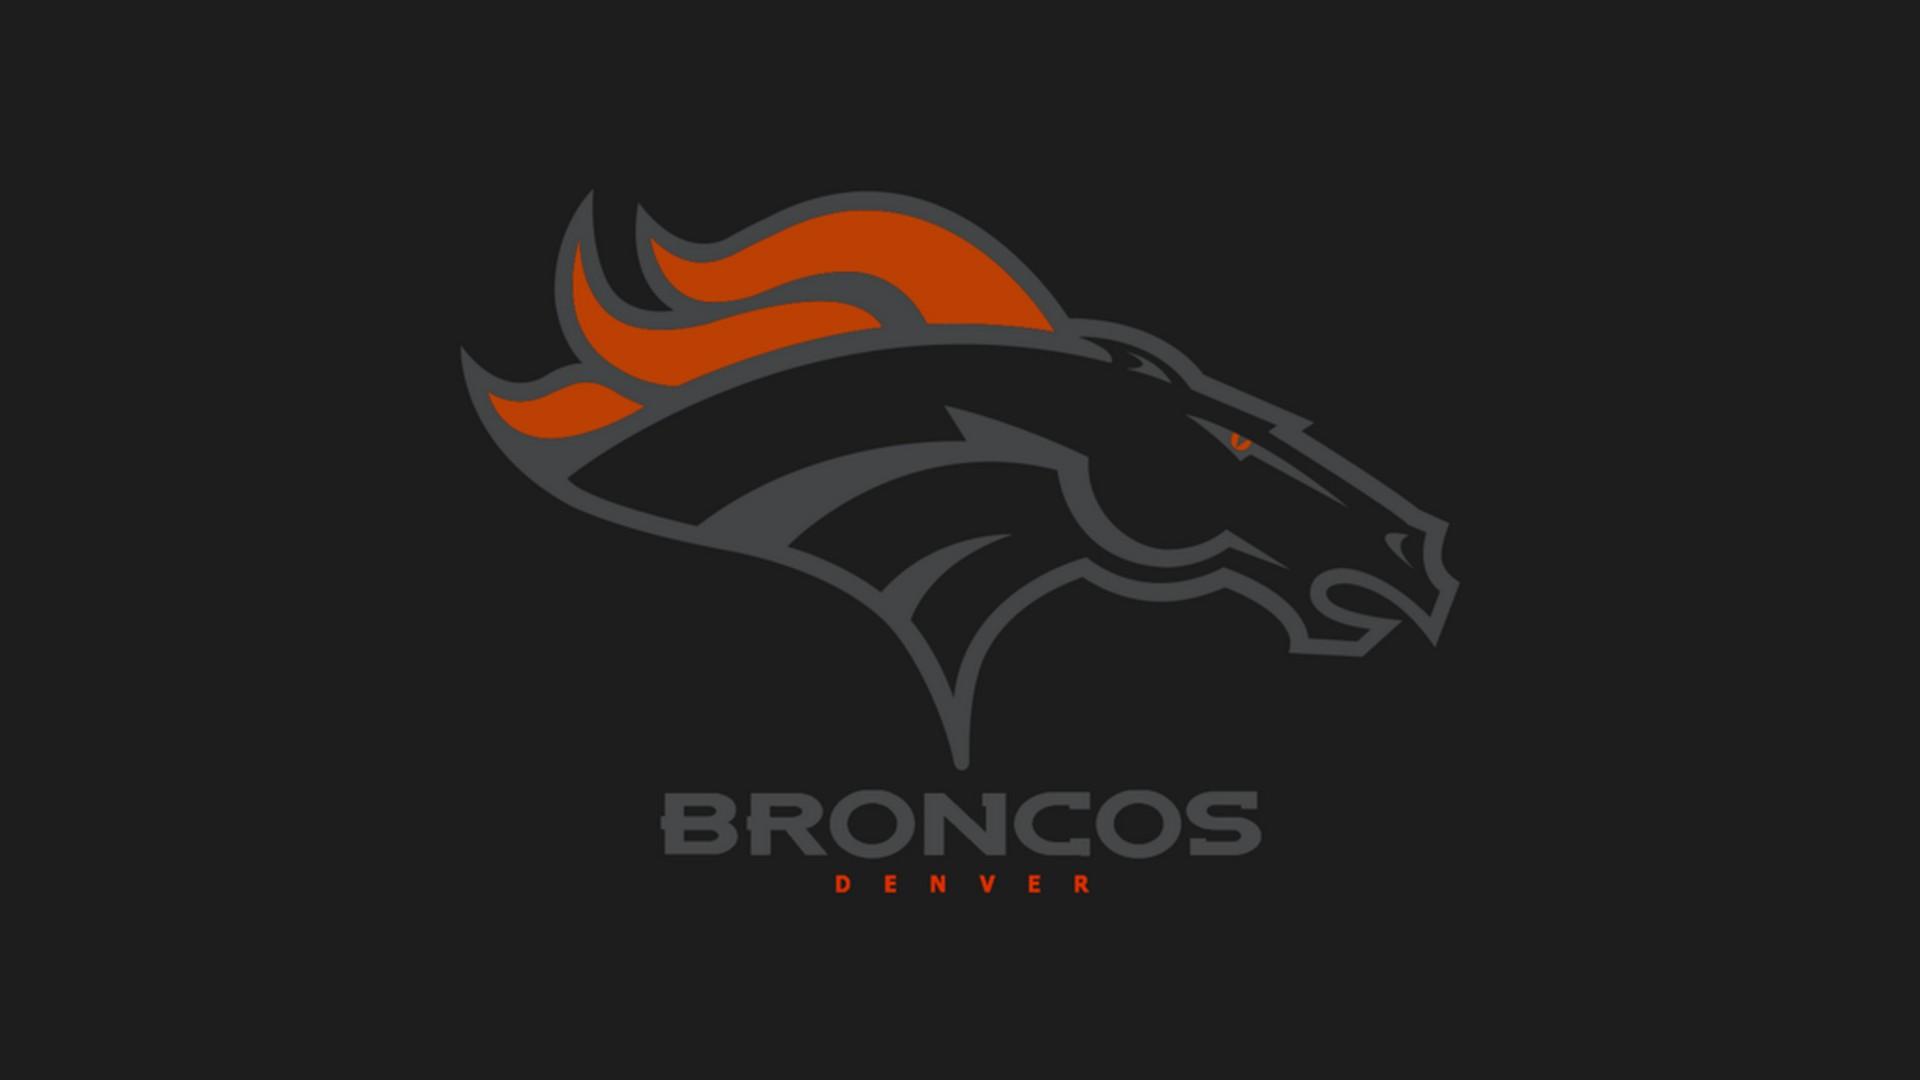 Denver Broncos For PC Wallpaper NFL Football Wallpaper